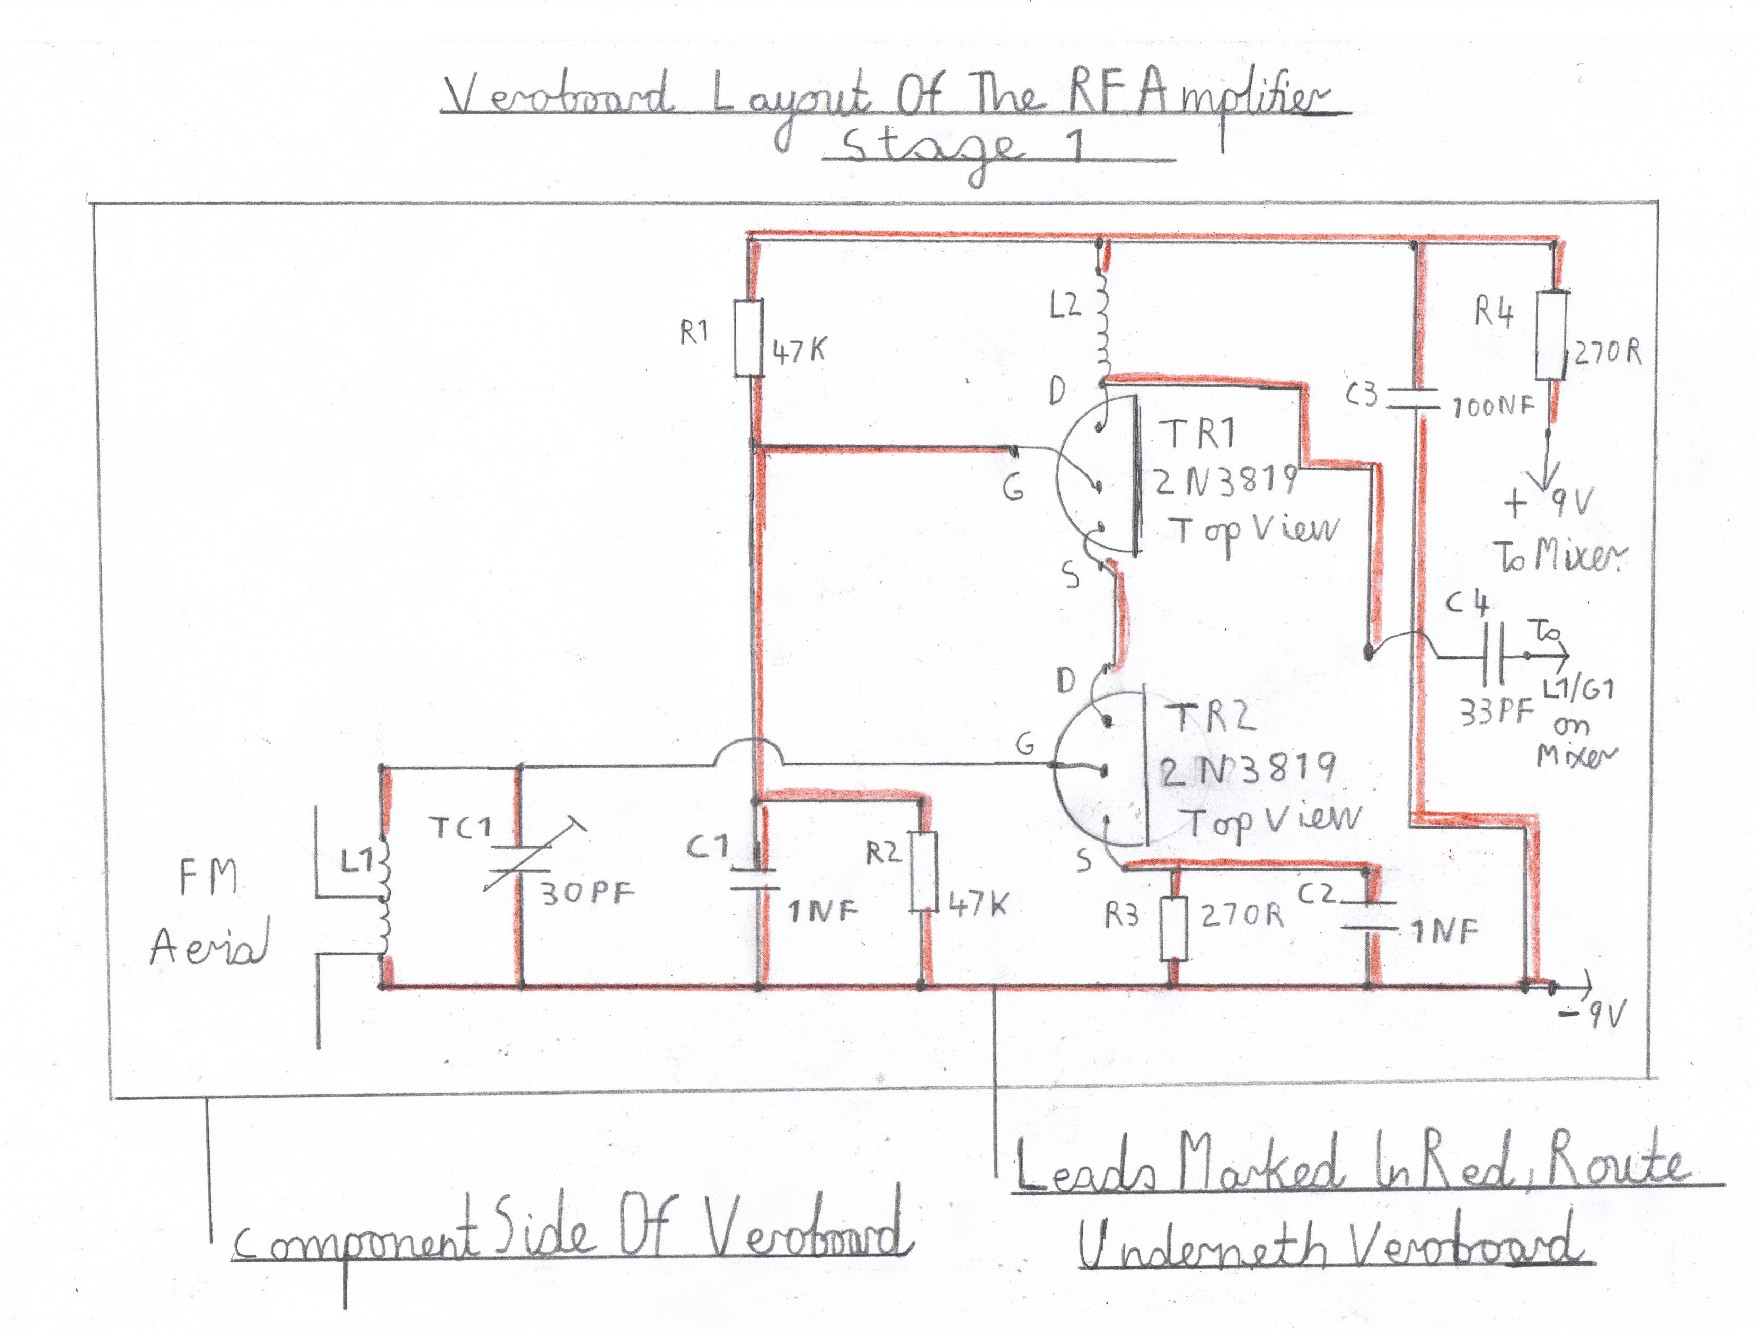 Basic Kitchen Electrical Wiring Diagram | Wiring Diagram - Kitchen Electrical Wiring Diagram